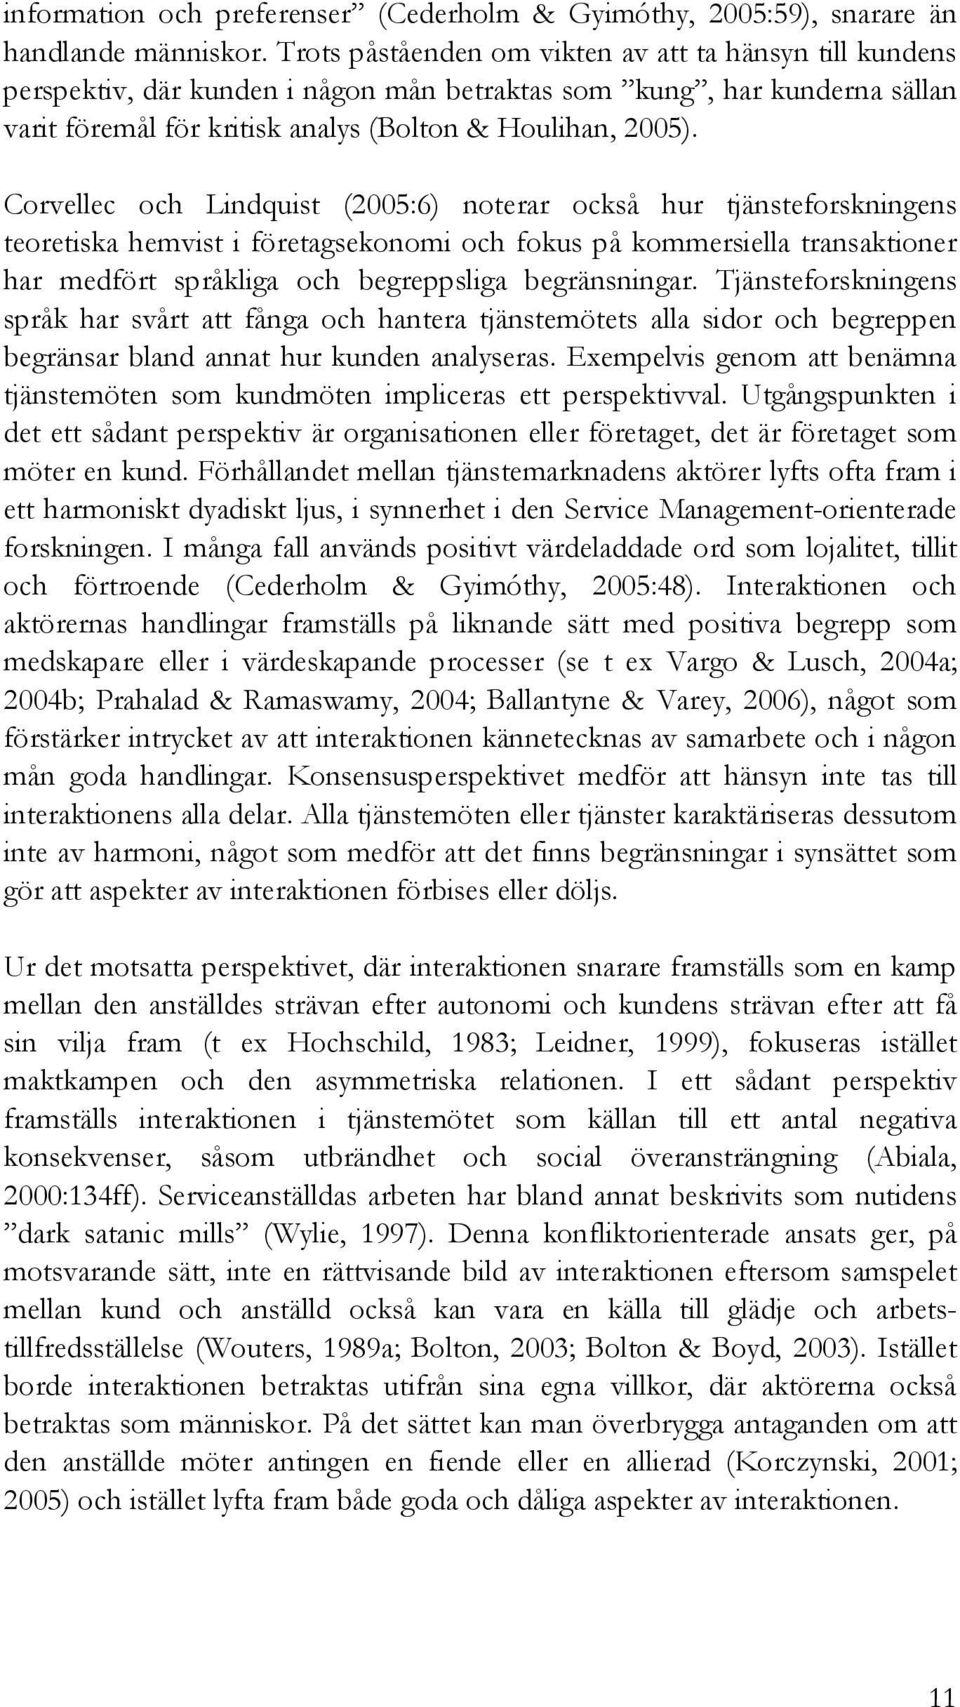 Corvellec och Lindquist (2005:6) noterar också hur tjänsteforskningens teoretiska hemvist i företagsekonomi och fokus på kommersiella transaktioner har medfört språkliga och begreppsliga